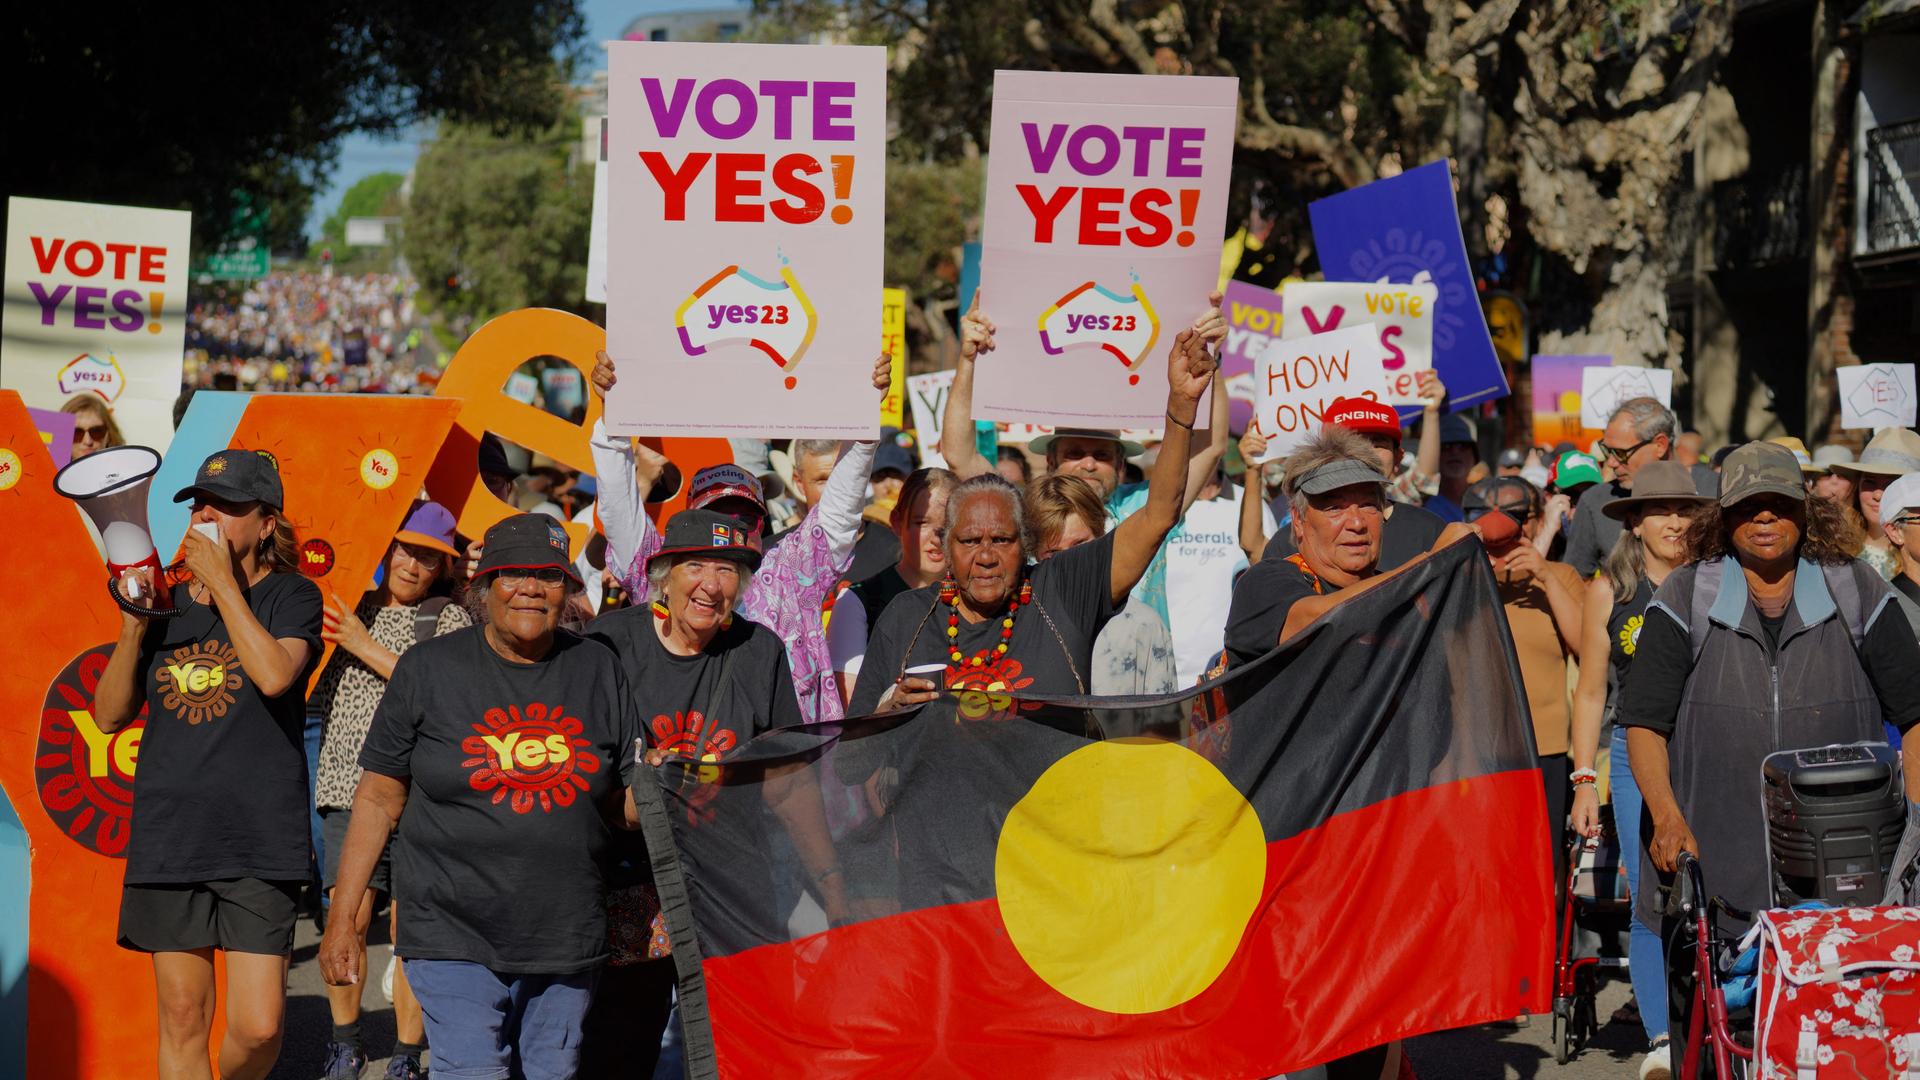 Australier demonstrieren für ein Referendum, dass indigenen Australiern mehr Rechte einräumt. Sie halten Plakate hoch mit der Aufschrift: "Vote Yes!"